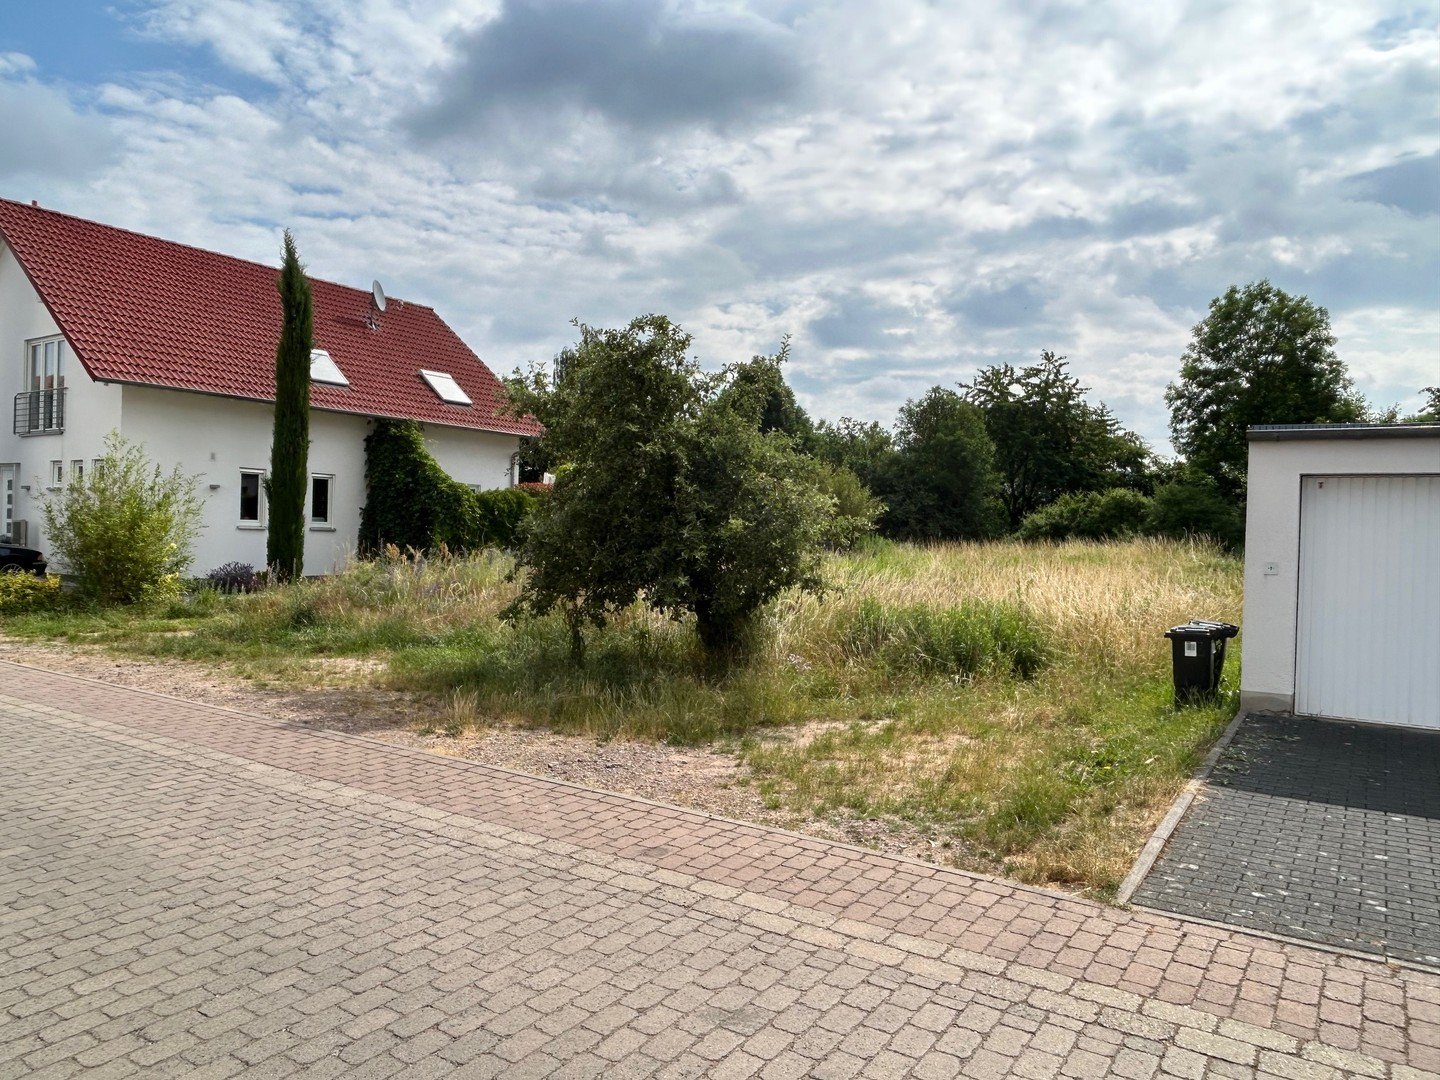 Exklusives Baugrundstück in ruhiger Lage von Dieburg für Ein- oder Mehrfamilienwohnhaus